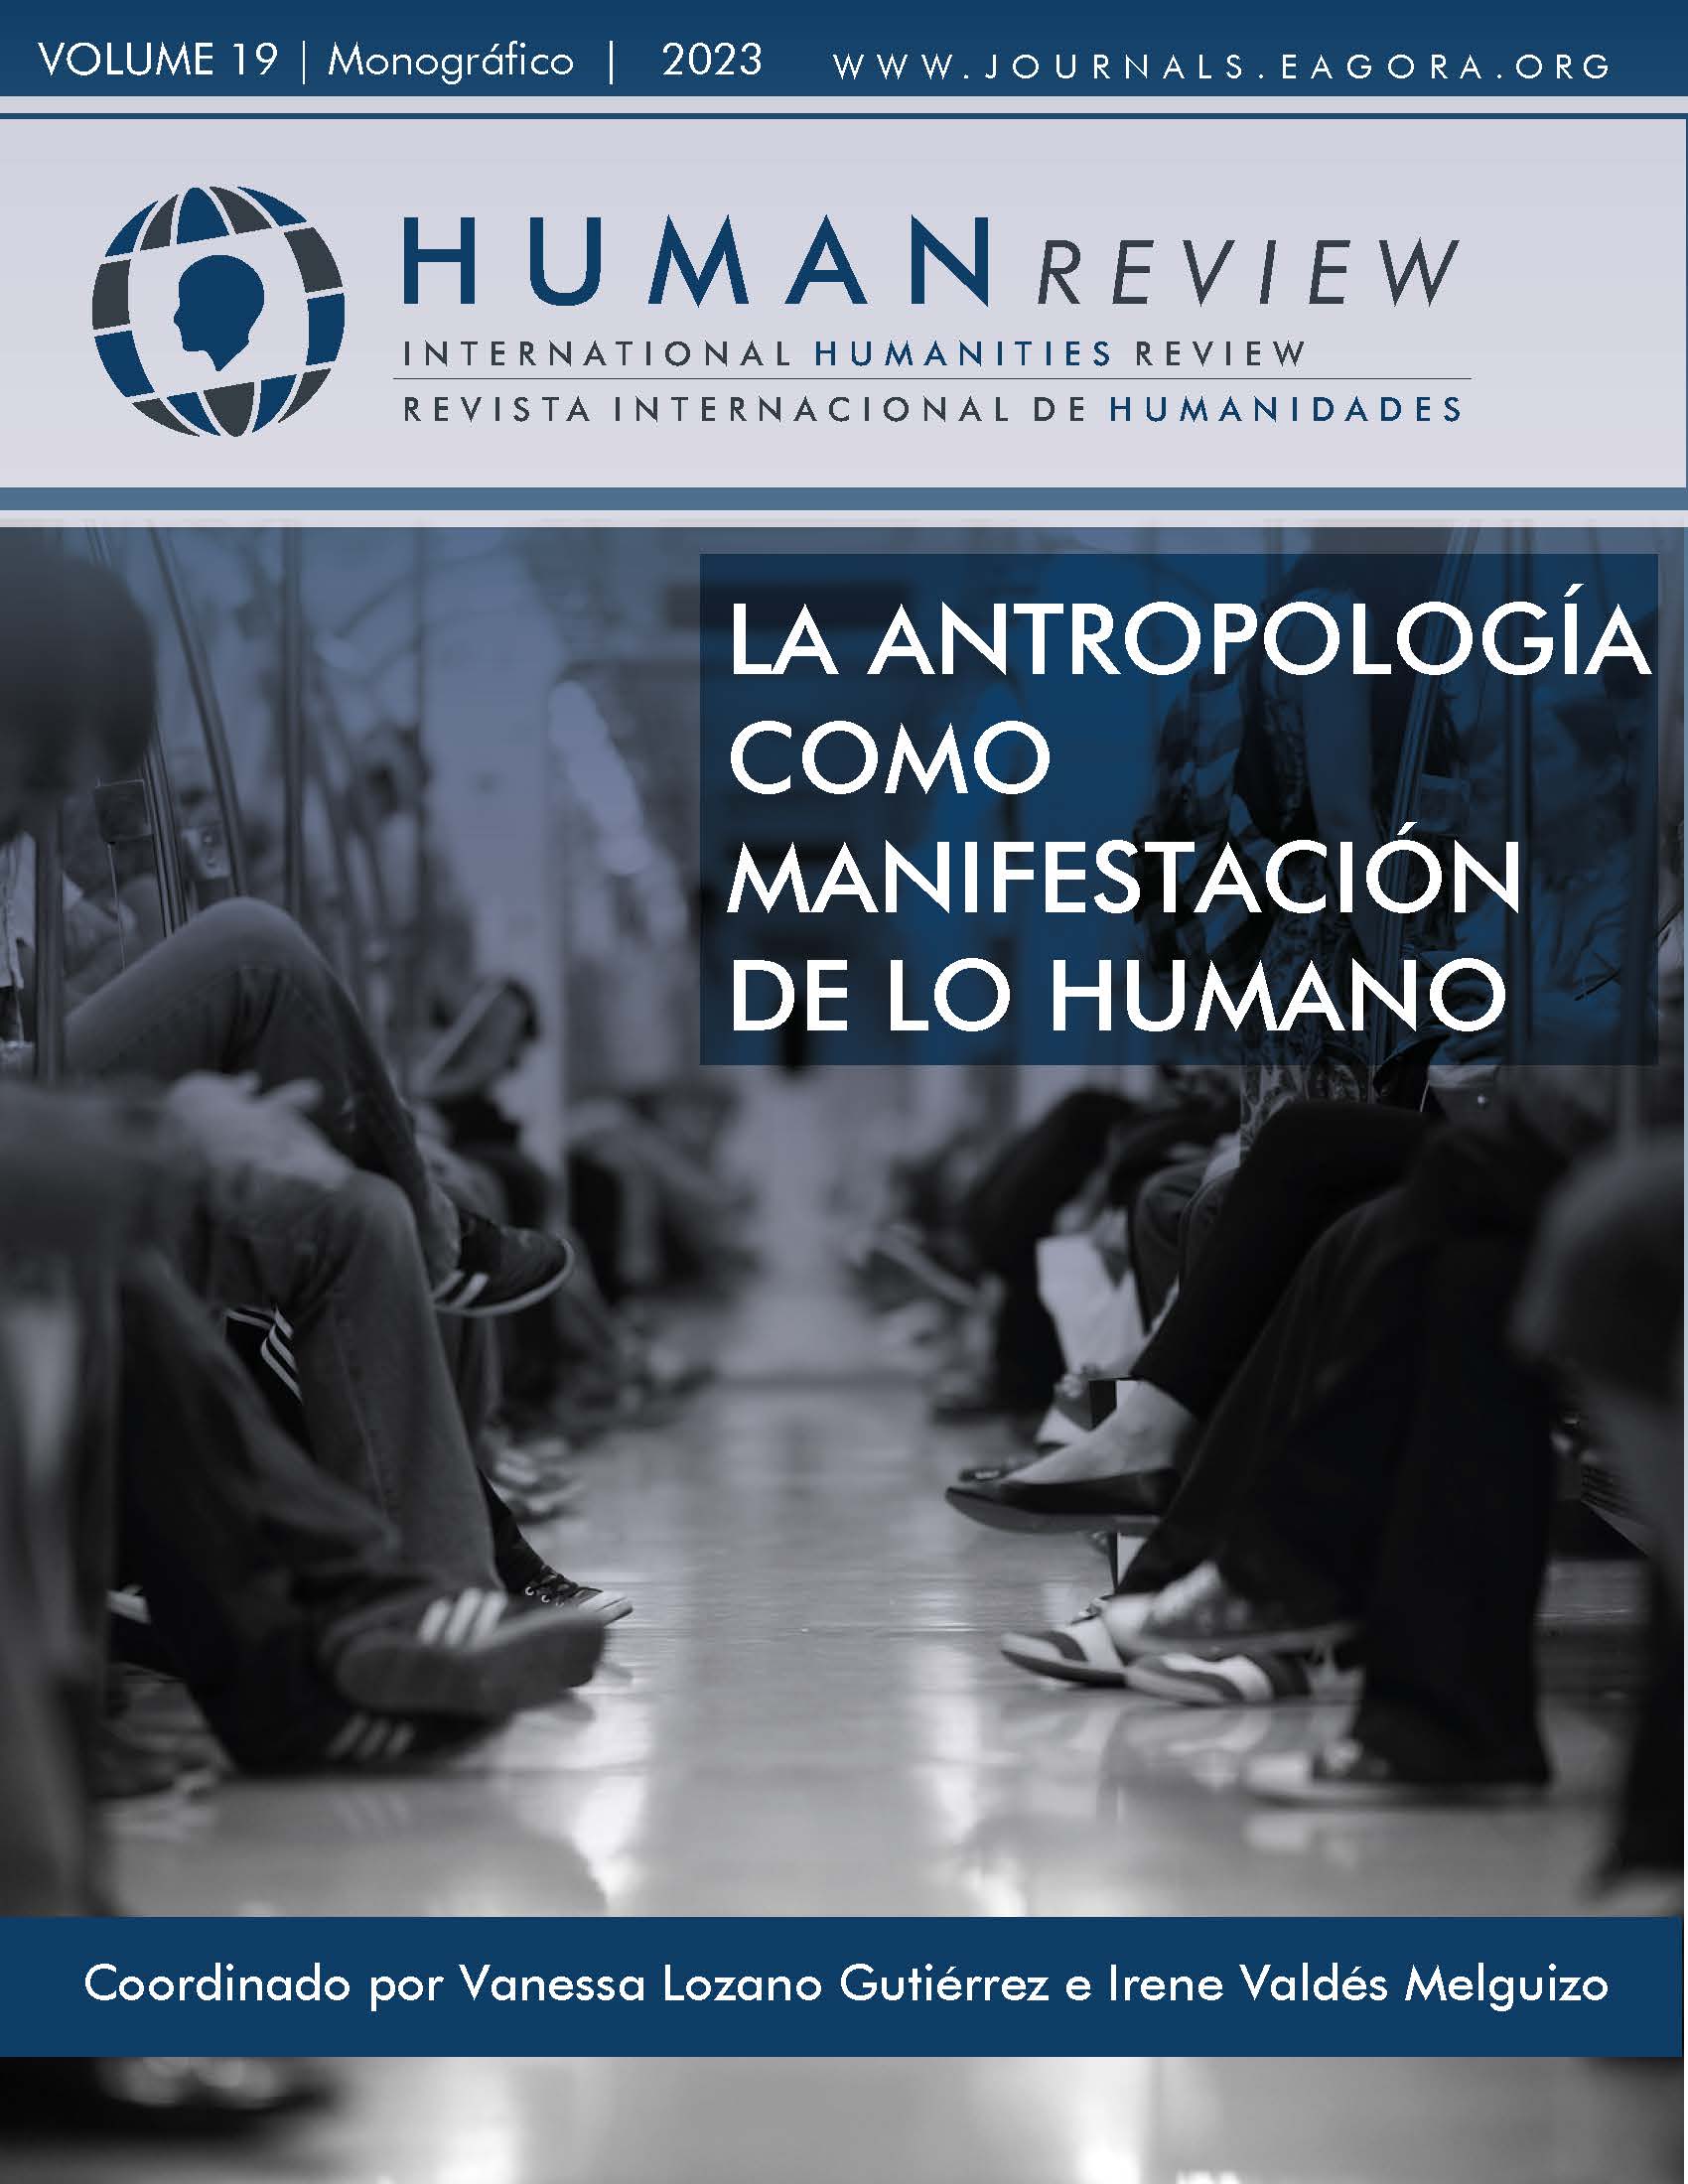 					Ver Vol. 19 Núm. 5 (2023): Monográfico: "La antropología como manifestación de lo humano"
				